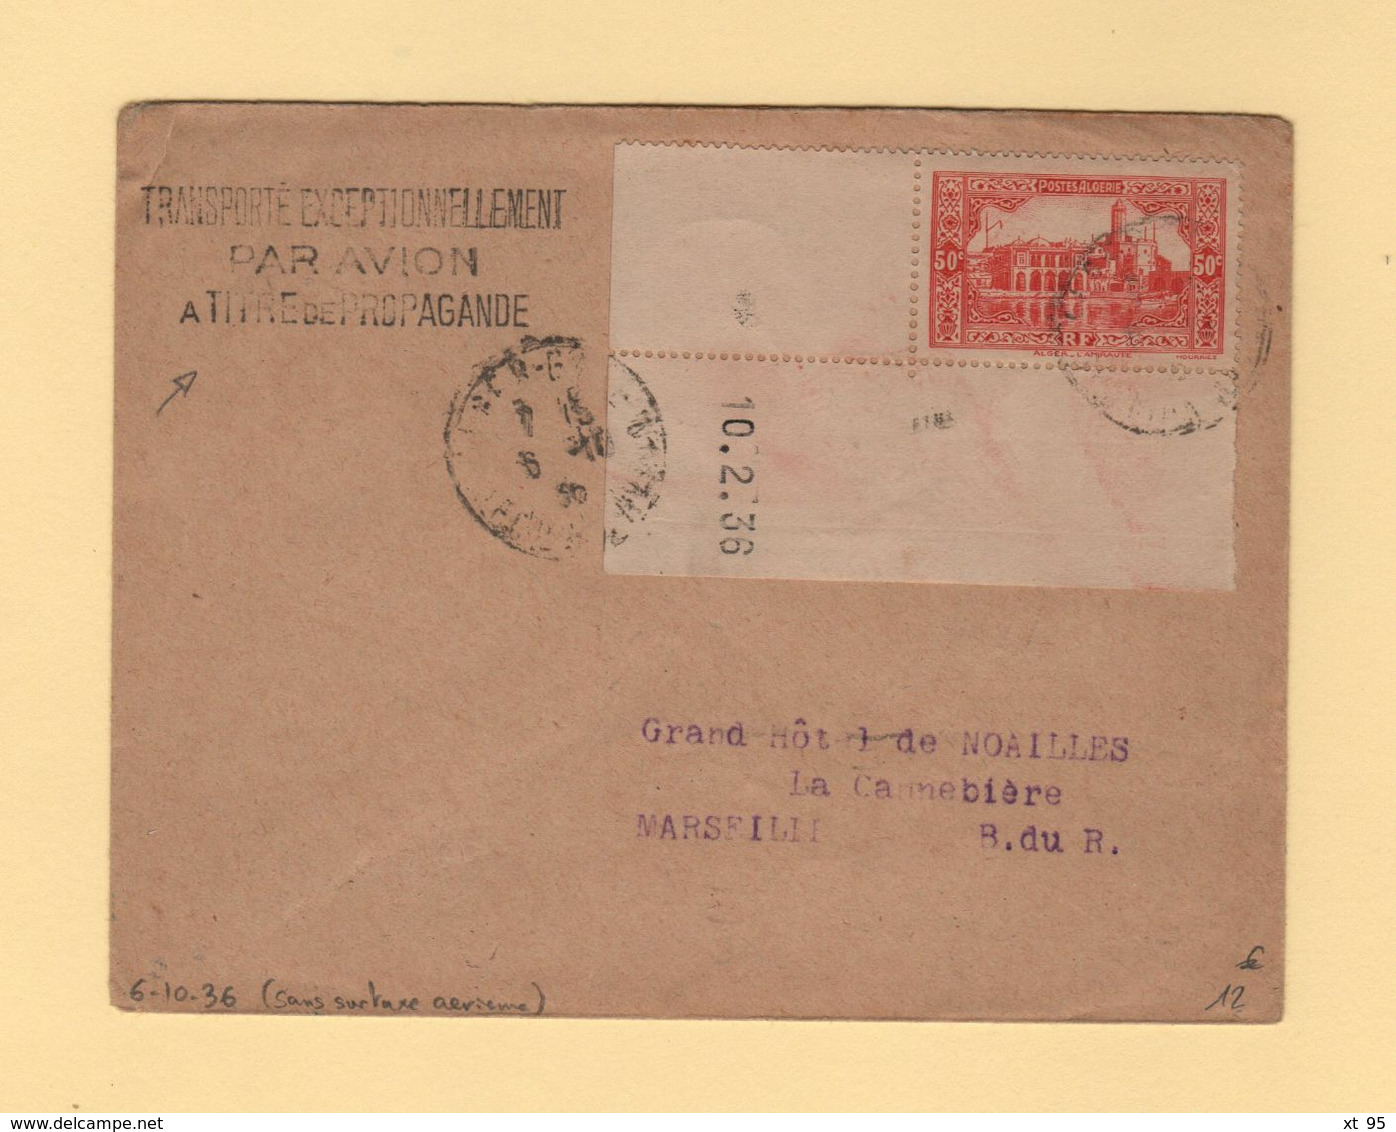 Algerie - Transporte Exceptionnellement Par Avion A Titre De Propagande - 6-10-1936 - Sans Surtaxe Aerienne - Airmail